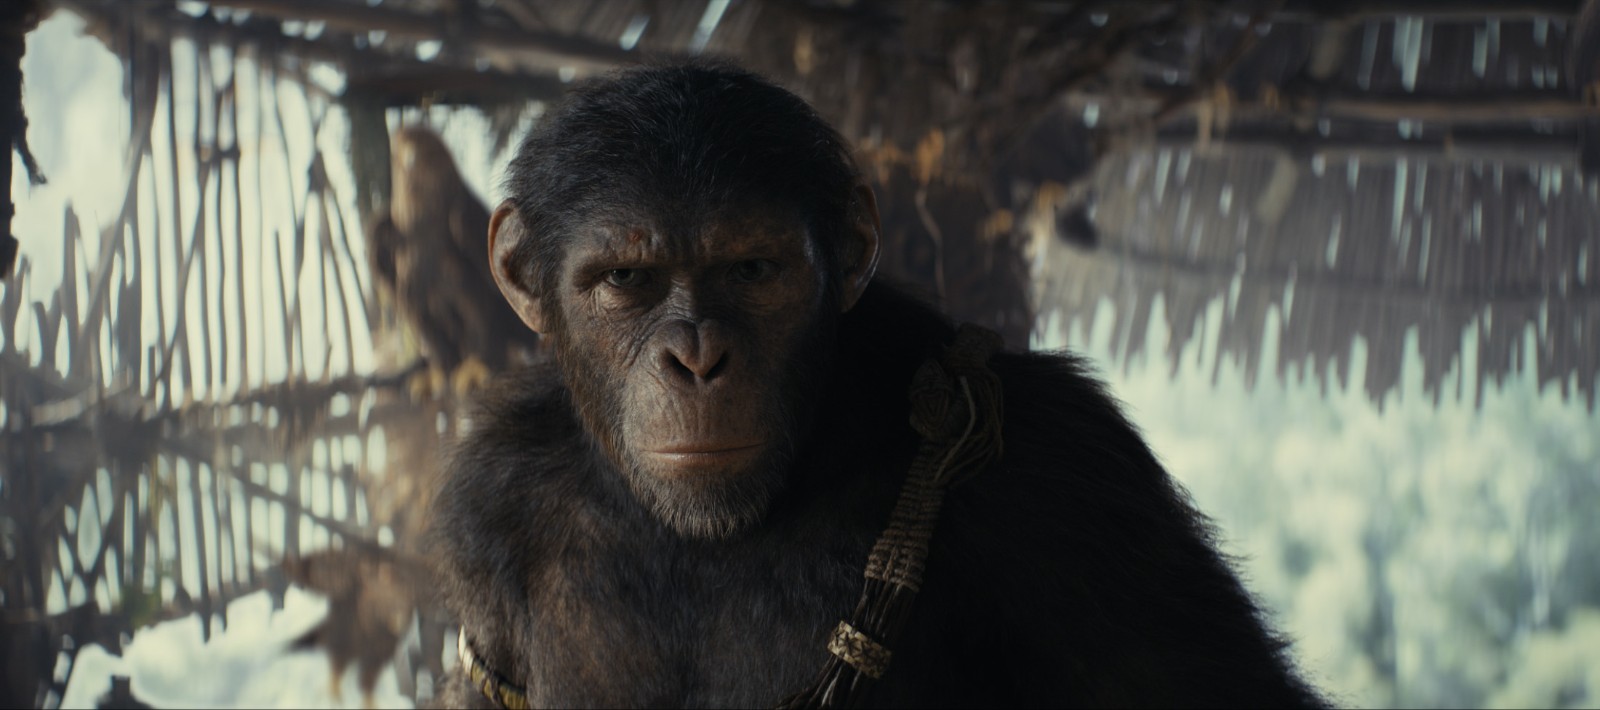 《猩球突起4》新剧照宣告 大猩猩好奇翻阅书籍